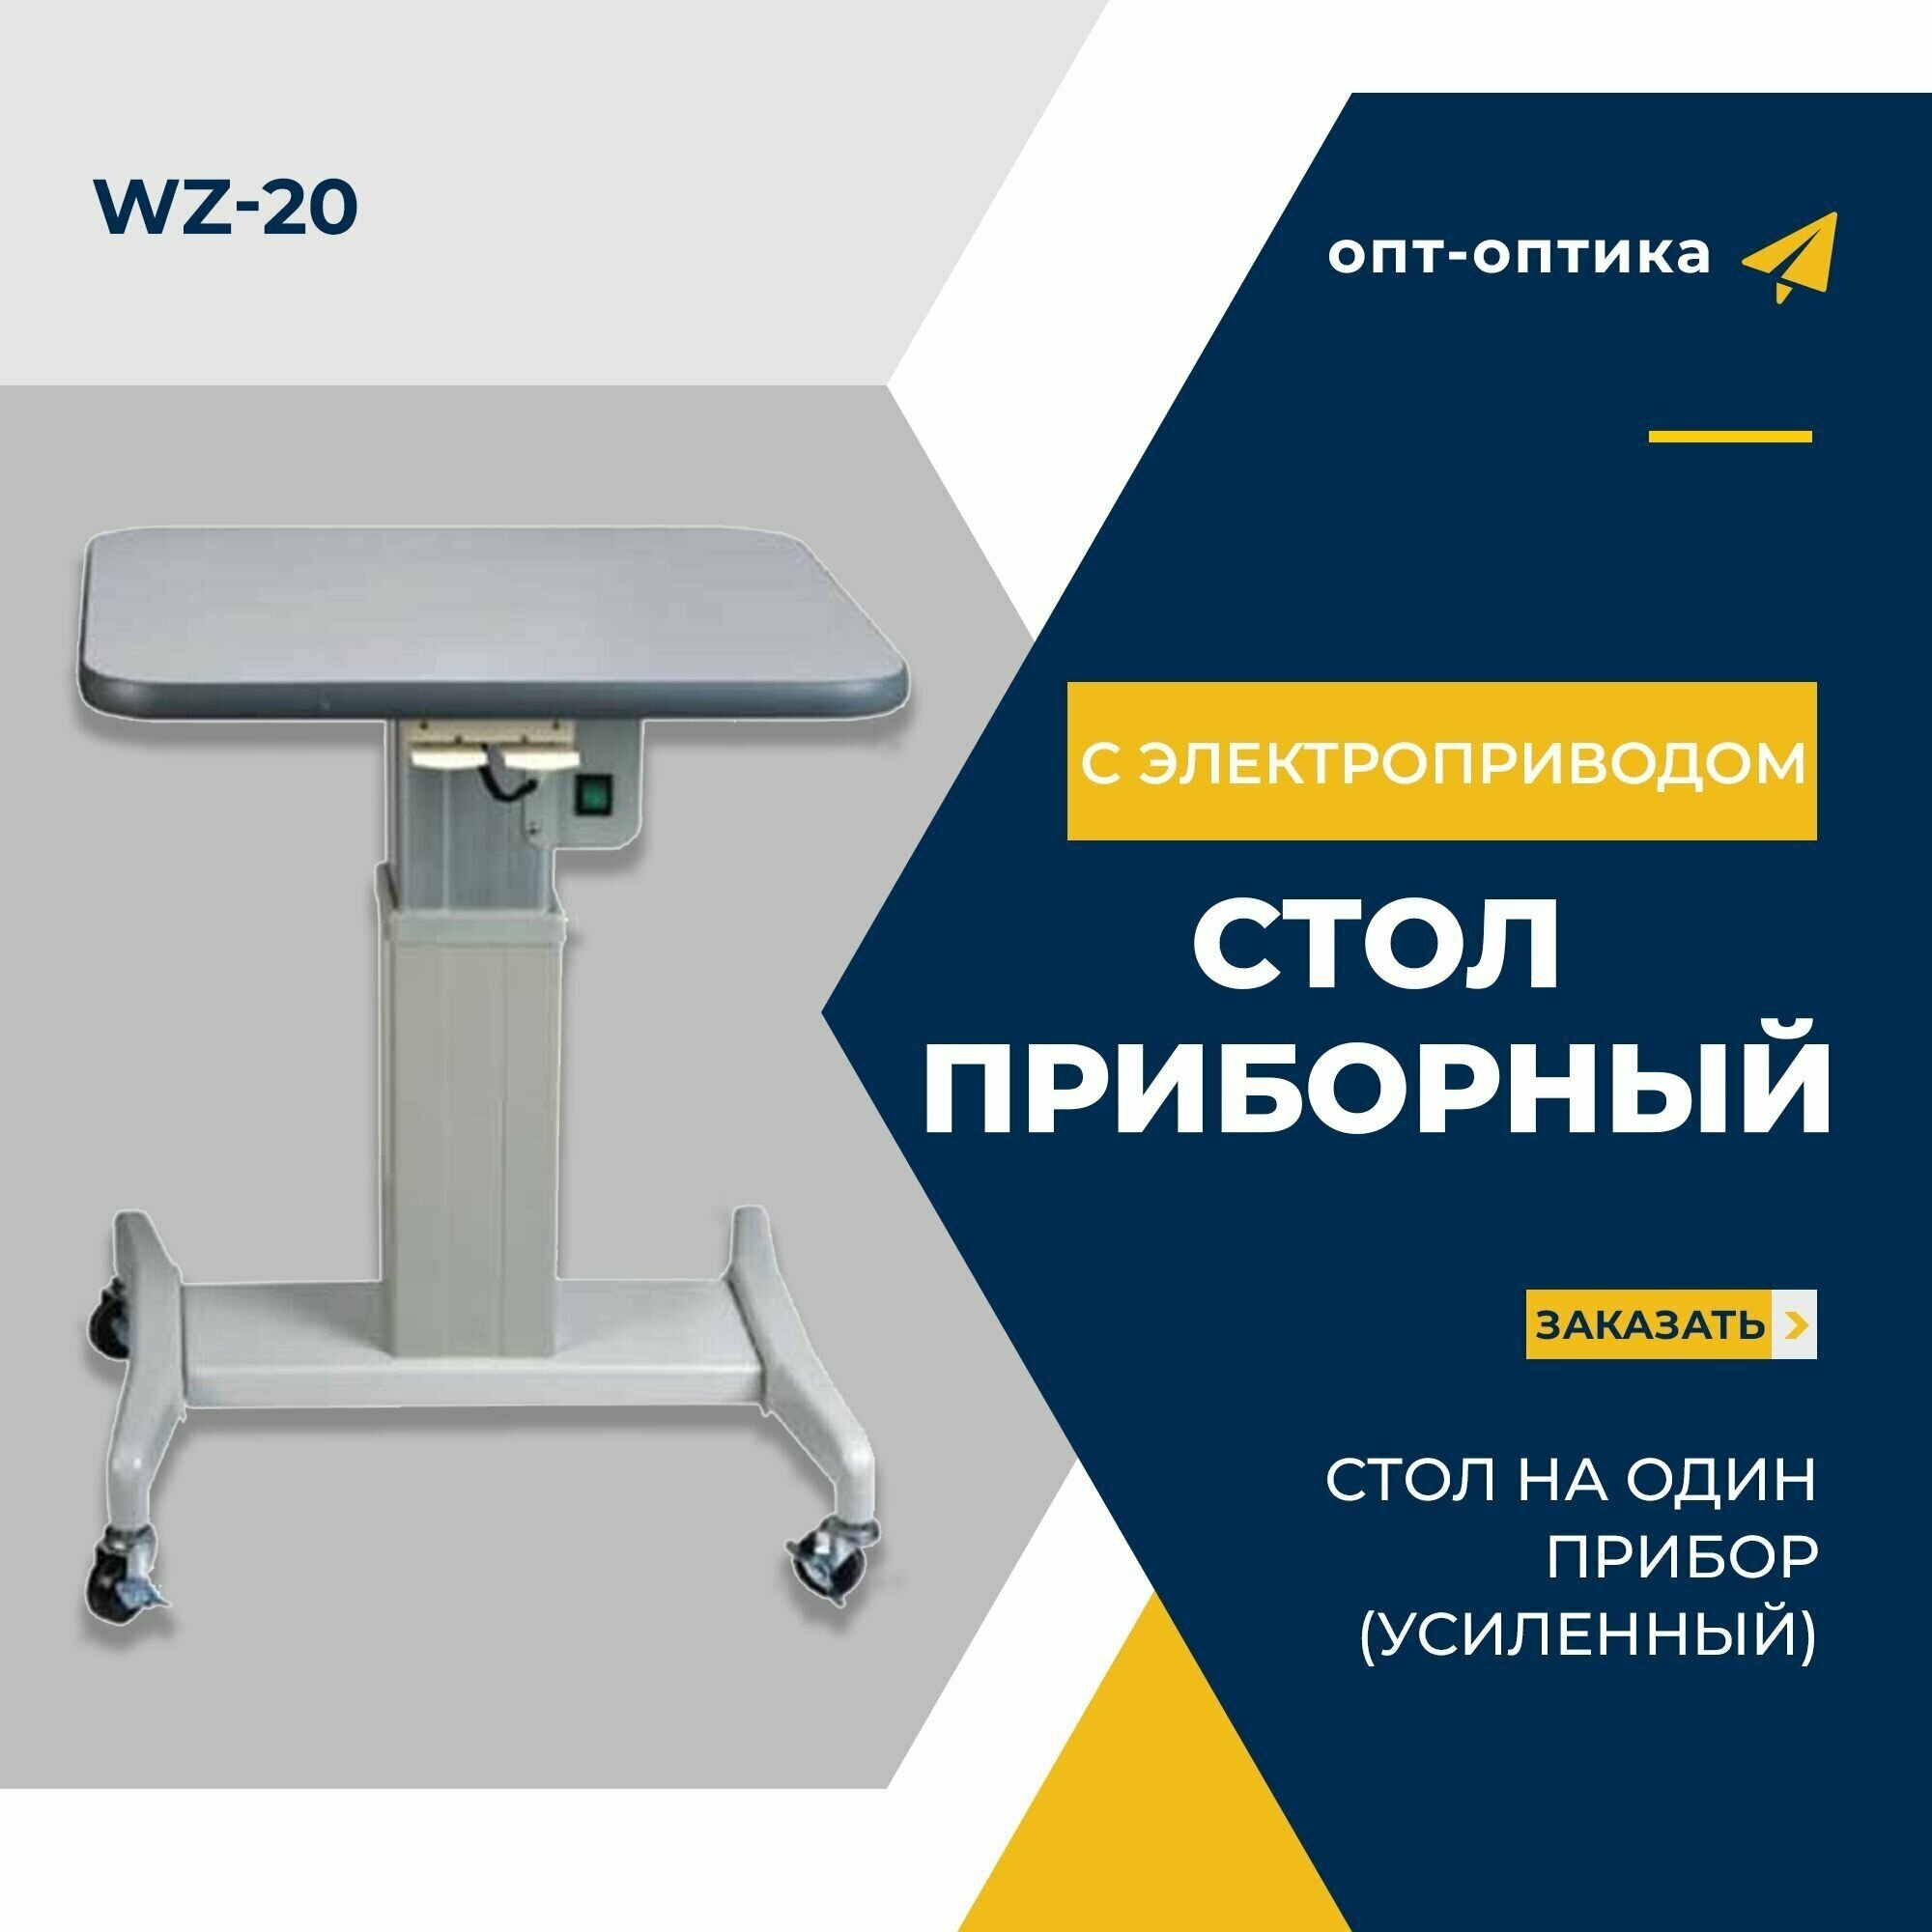 Стол приборный с электроприводом усиленный WZ-20